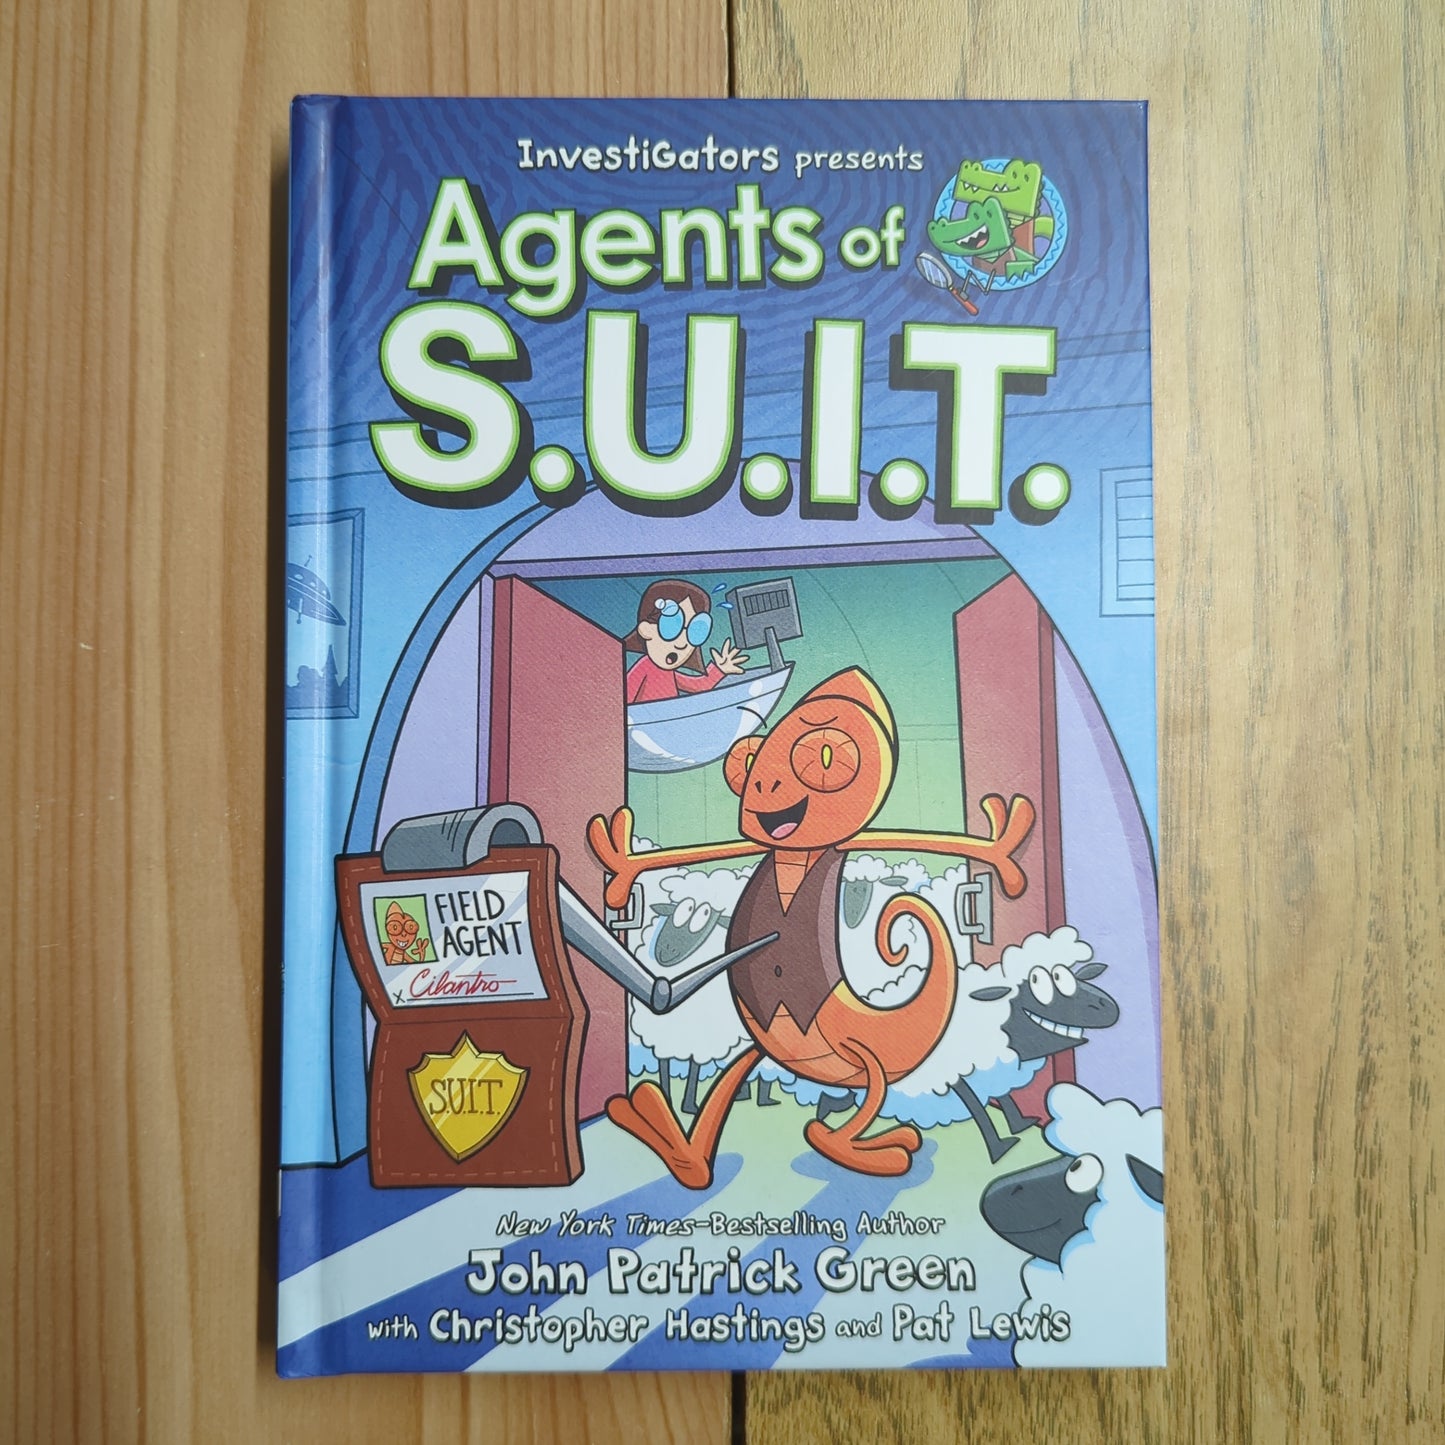 InvestiGators: Agents of S.U.I.T.